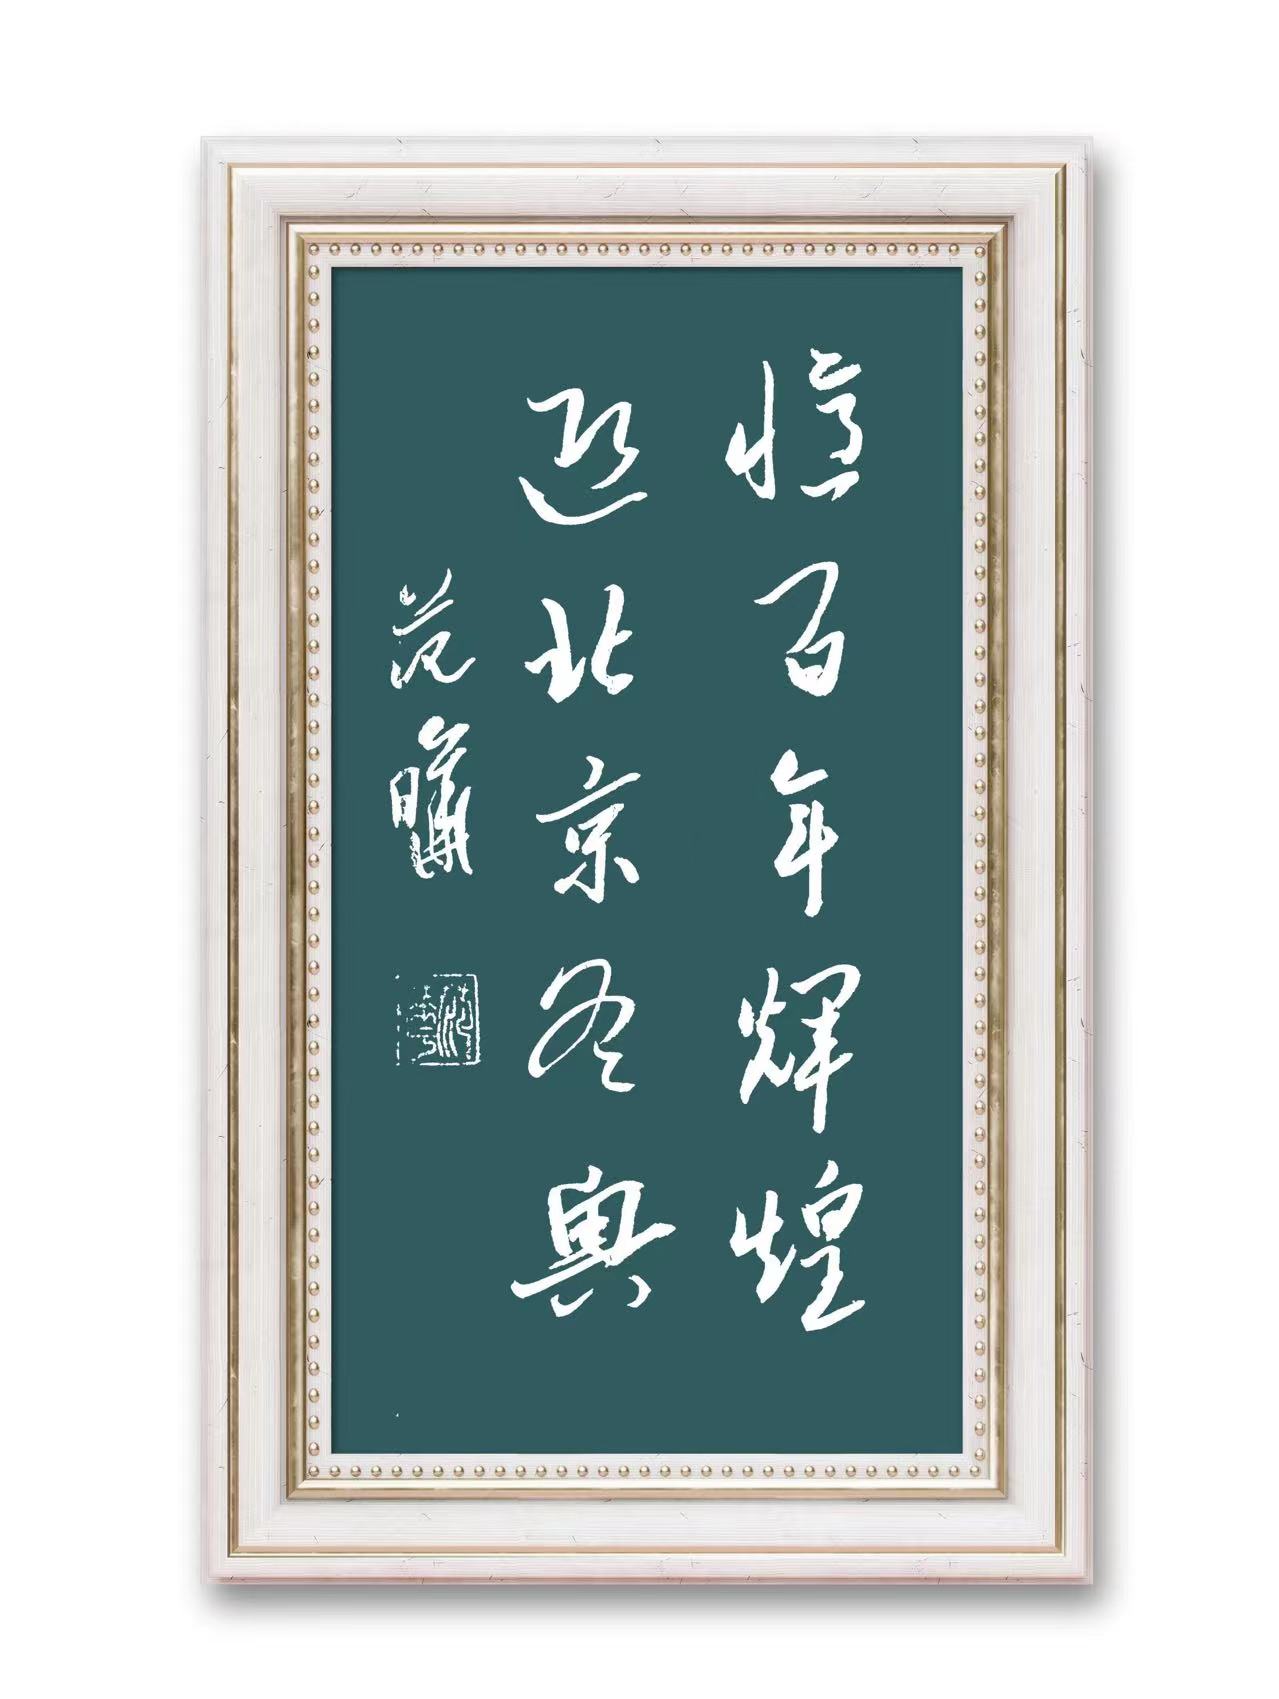 中国大众文化学会名人书画艺术发展委员会——范晔